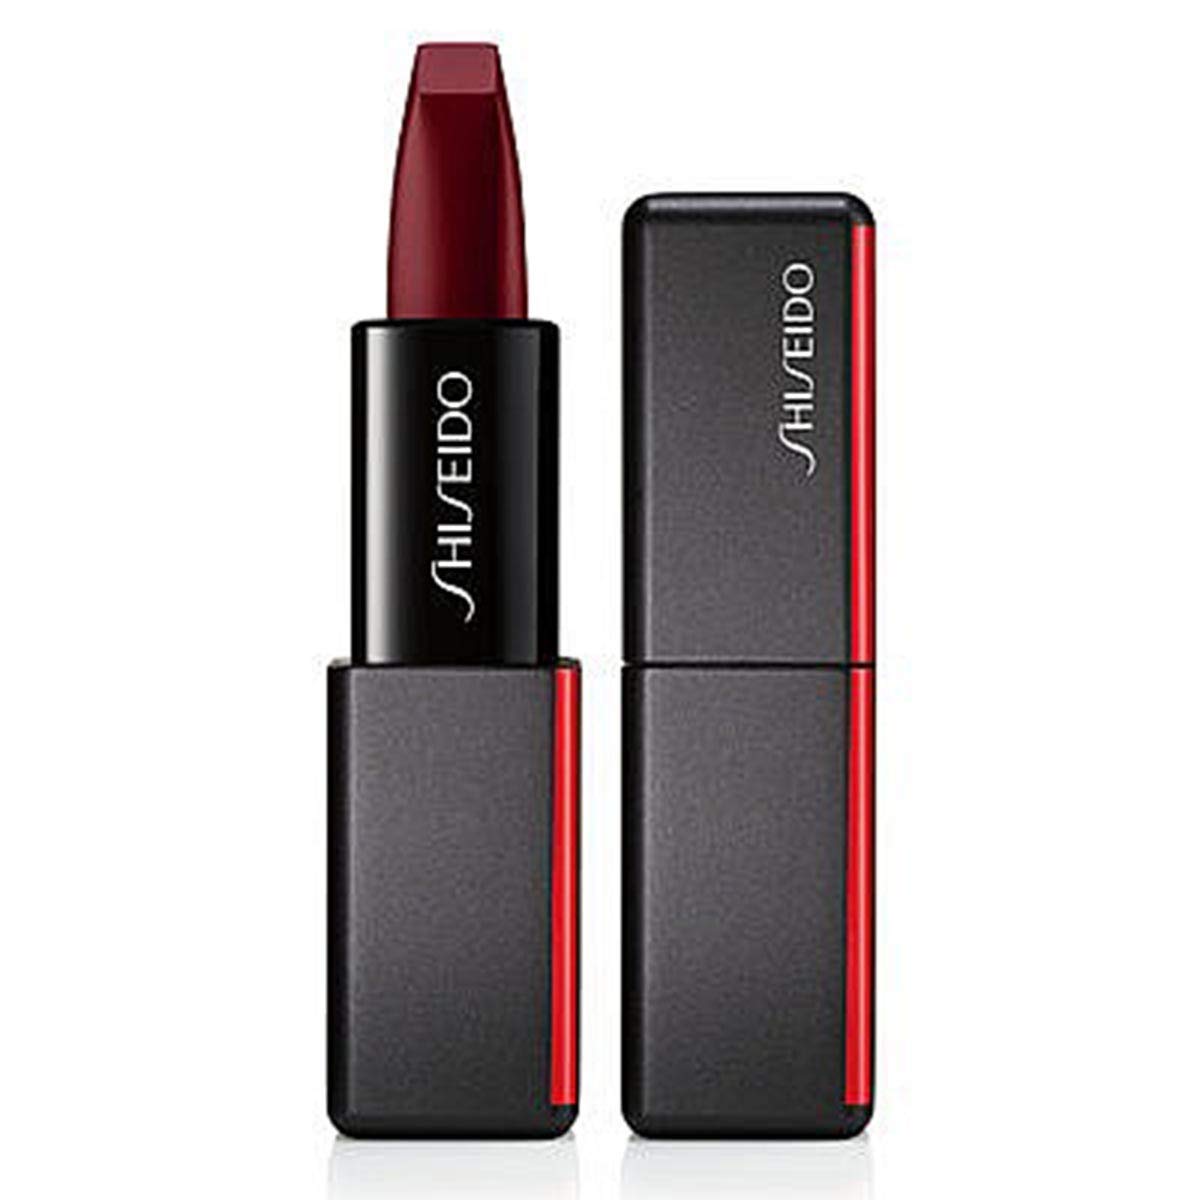 Shiseido Modern Matte Powder Lipstick, 522 Velvet Rope, 1 x 4 g, ‎red